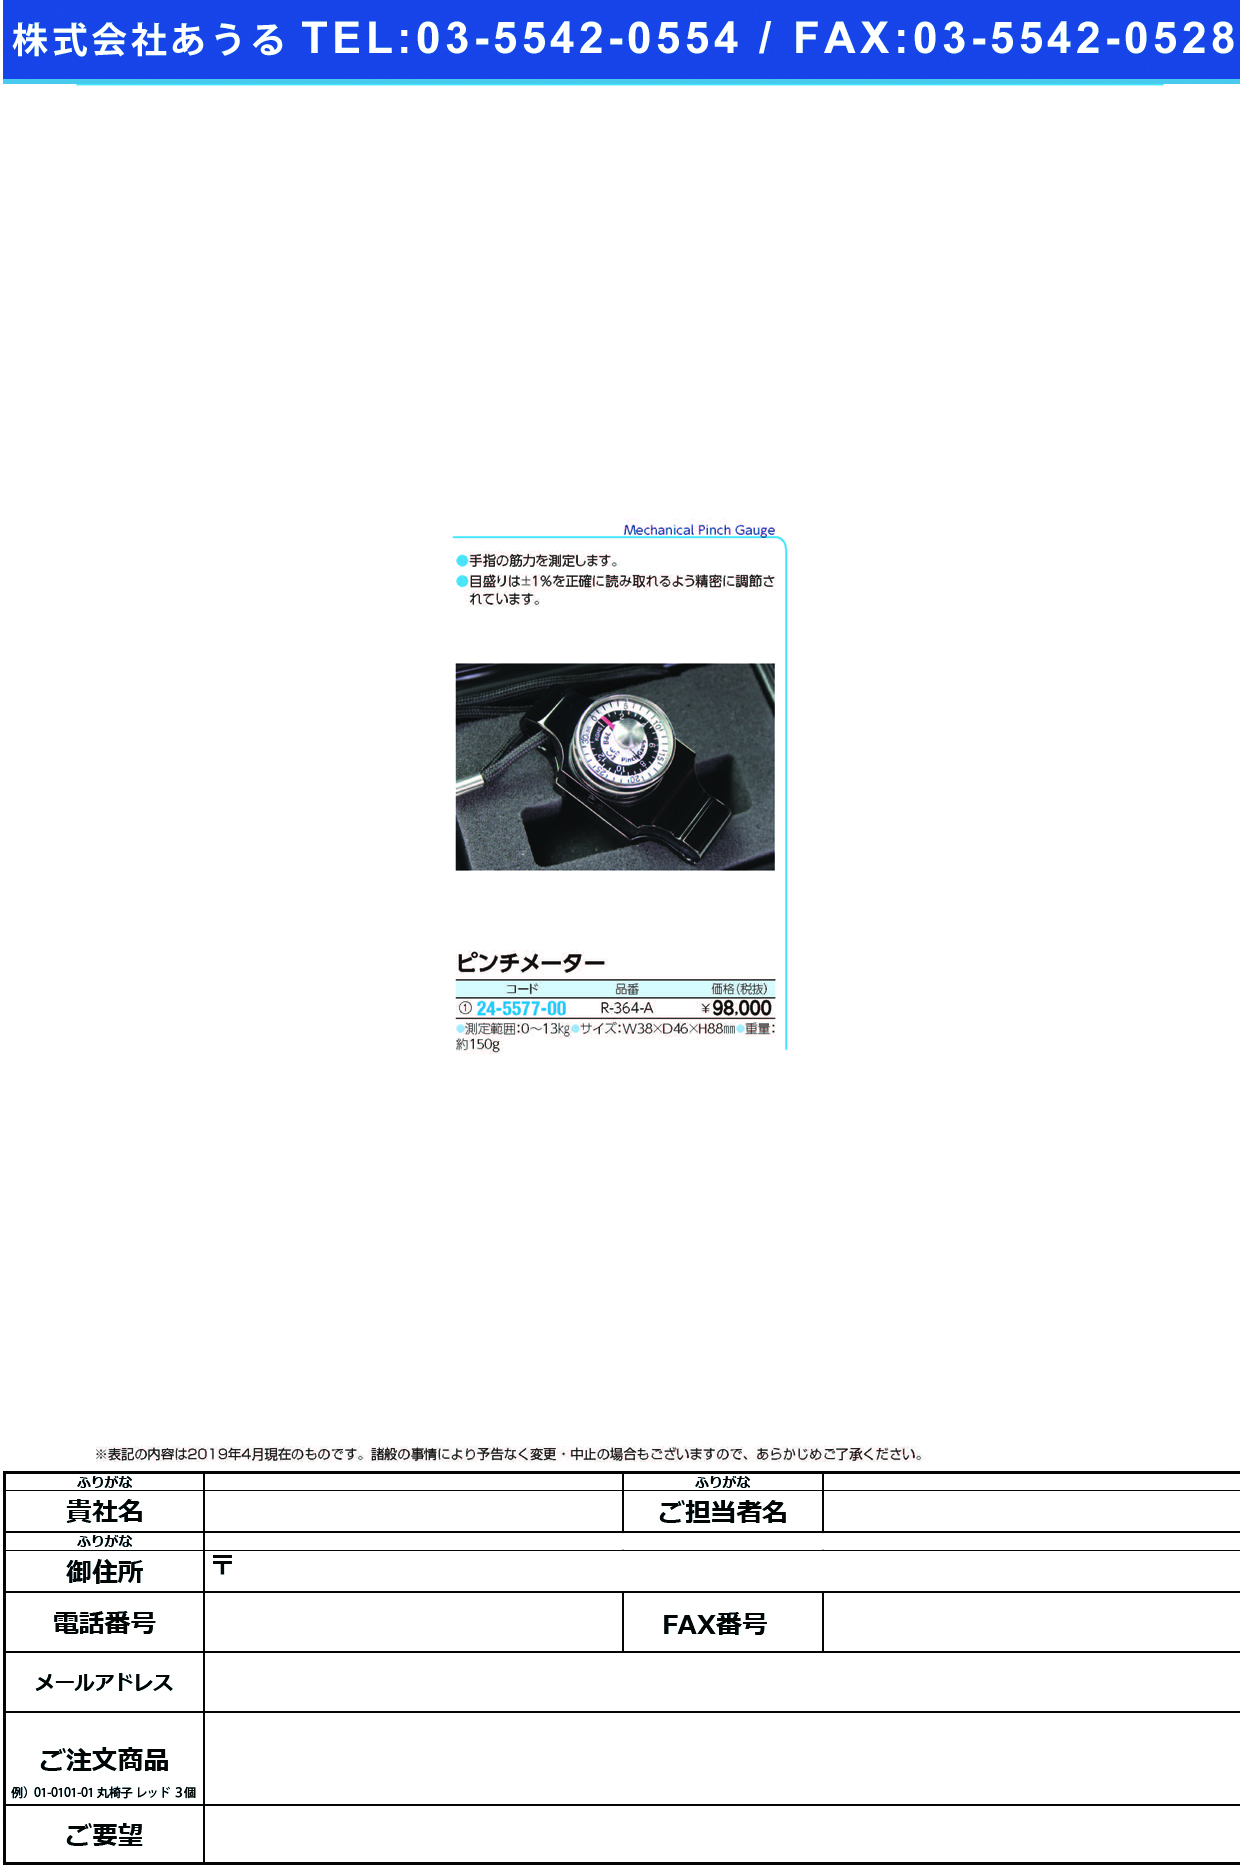 (24-5577-00)ピンチメーター R-364-A ﾋﾟﾝﾁﾒｰﾀｰ【1台単位】【2019年カタログ商品】